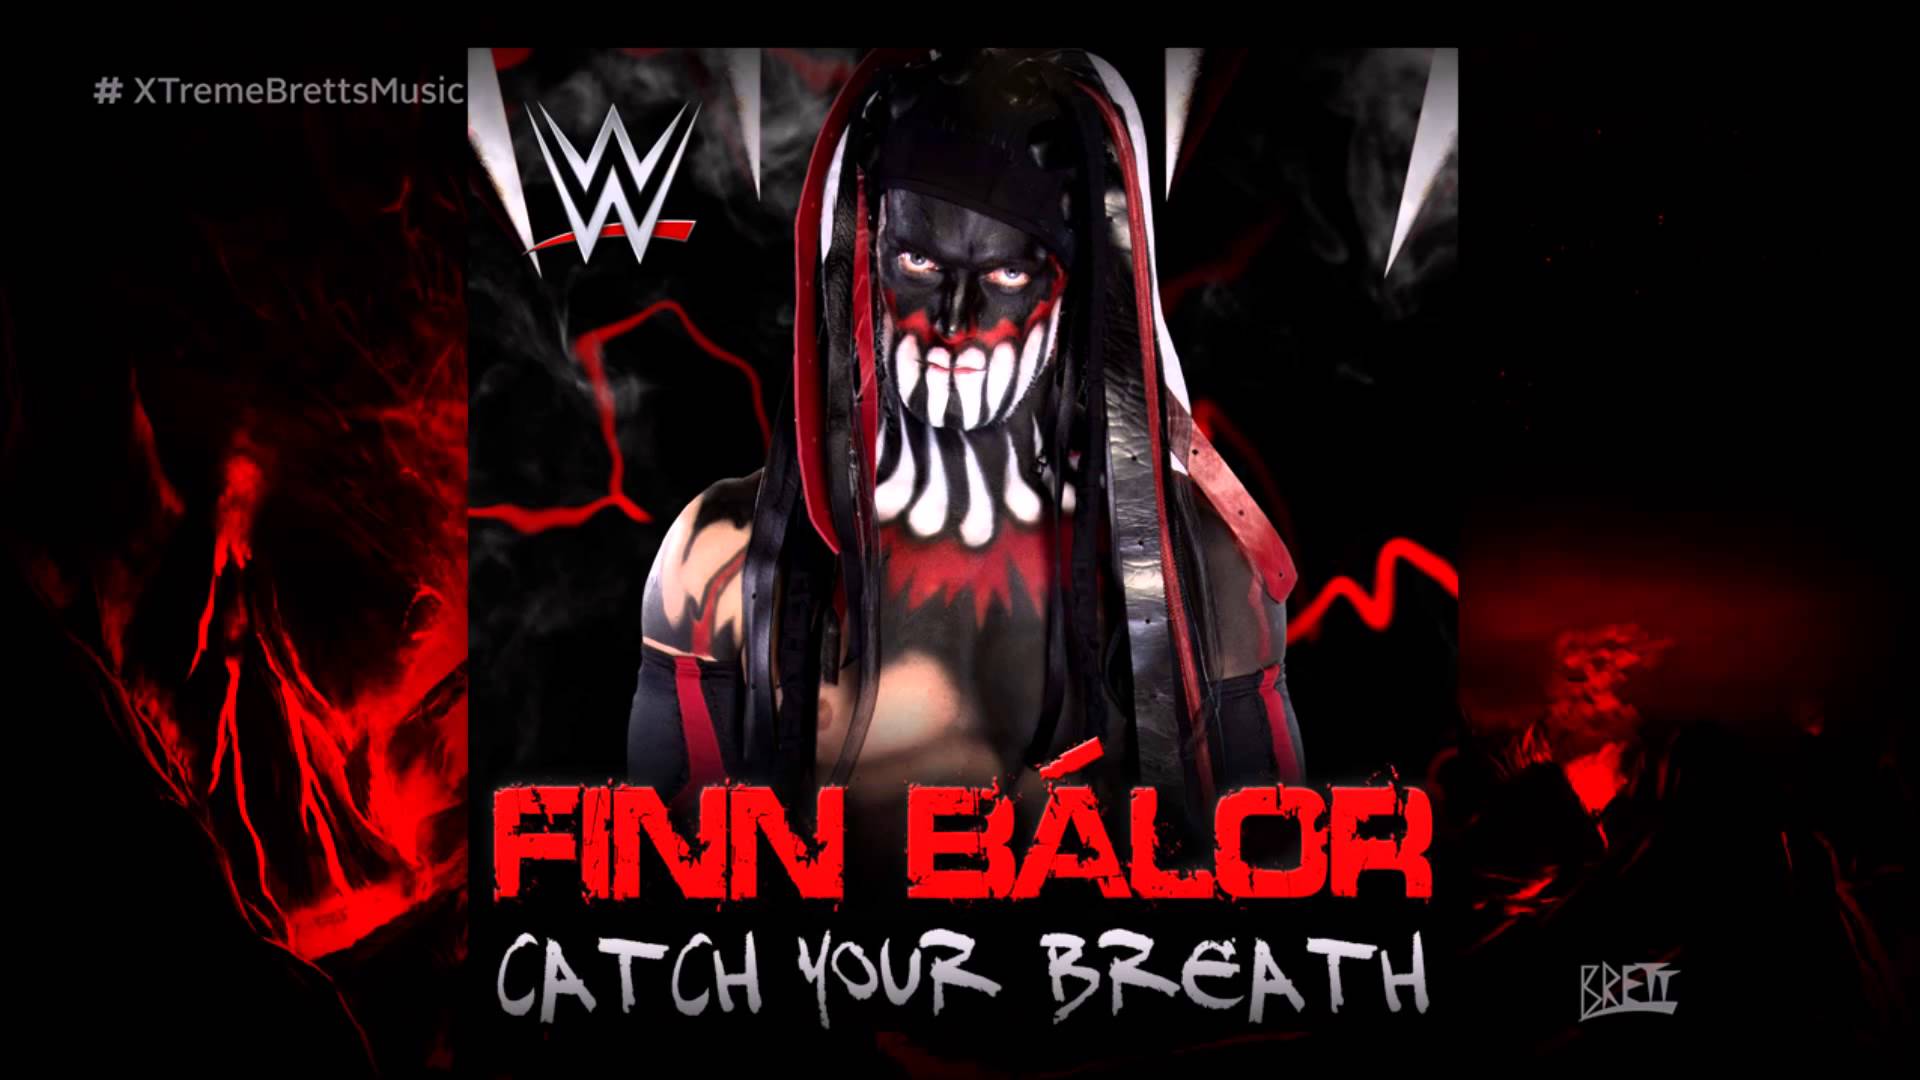 WWE NXT: Catch Your Breath [iTunes Release] by CFO$ ▻ Finn